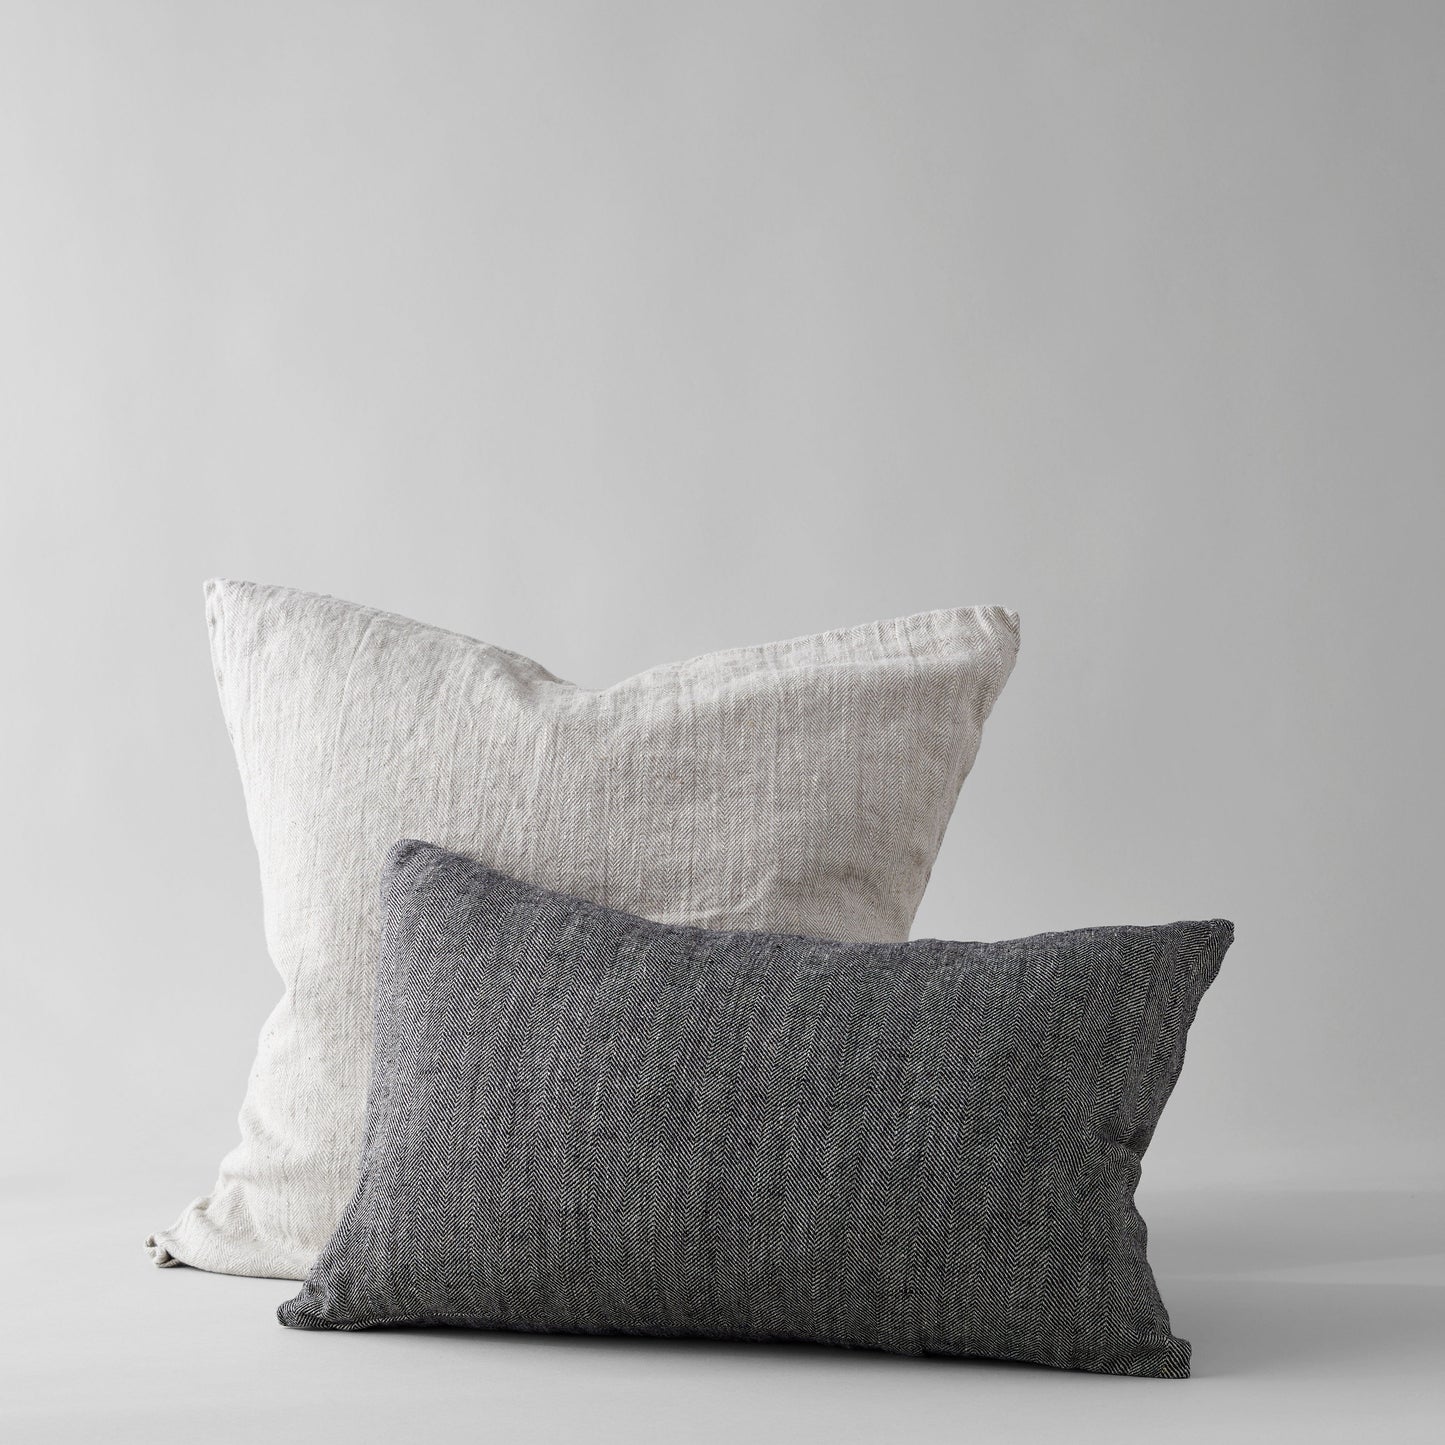 Bloomist Pillows Herringbone Linen Pillow in Natural, 24x24